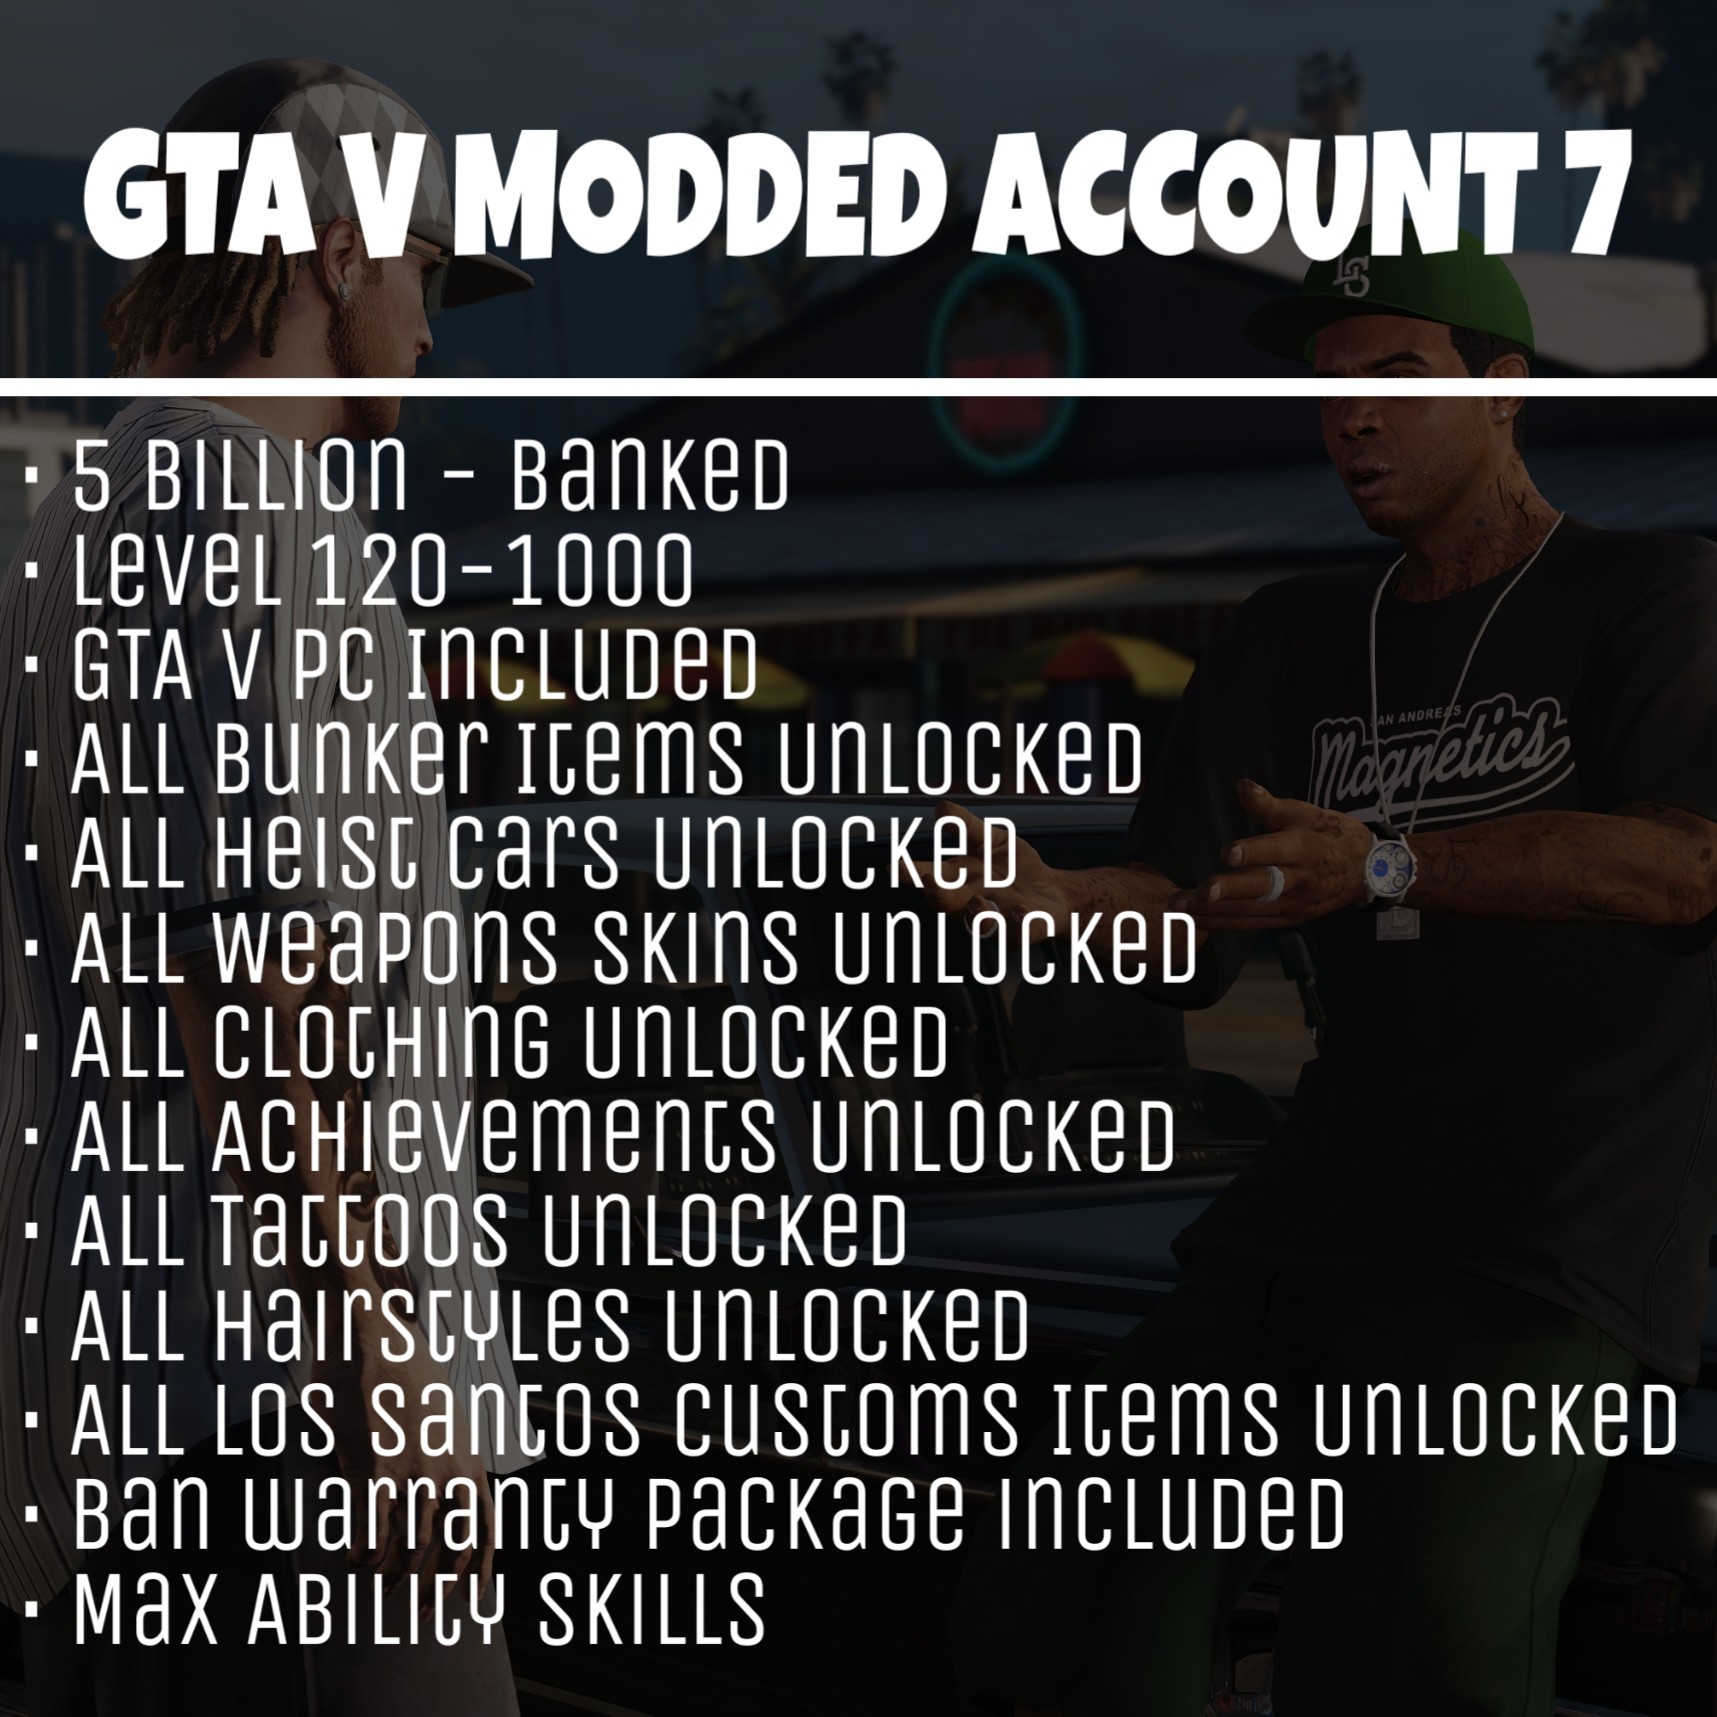 gta 5 modded accounts amazon